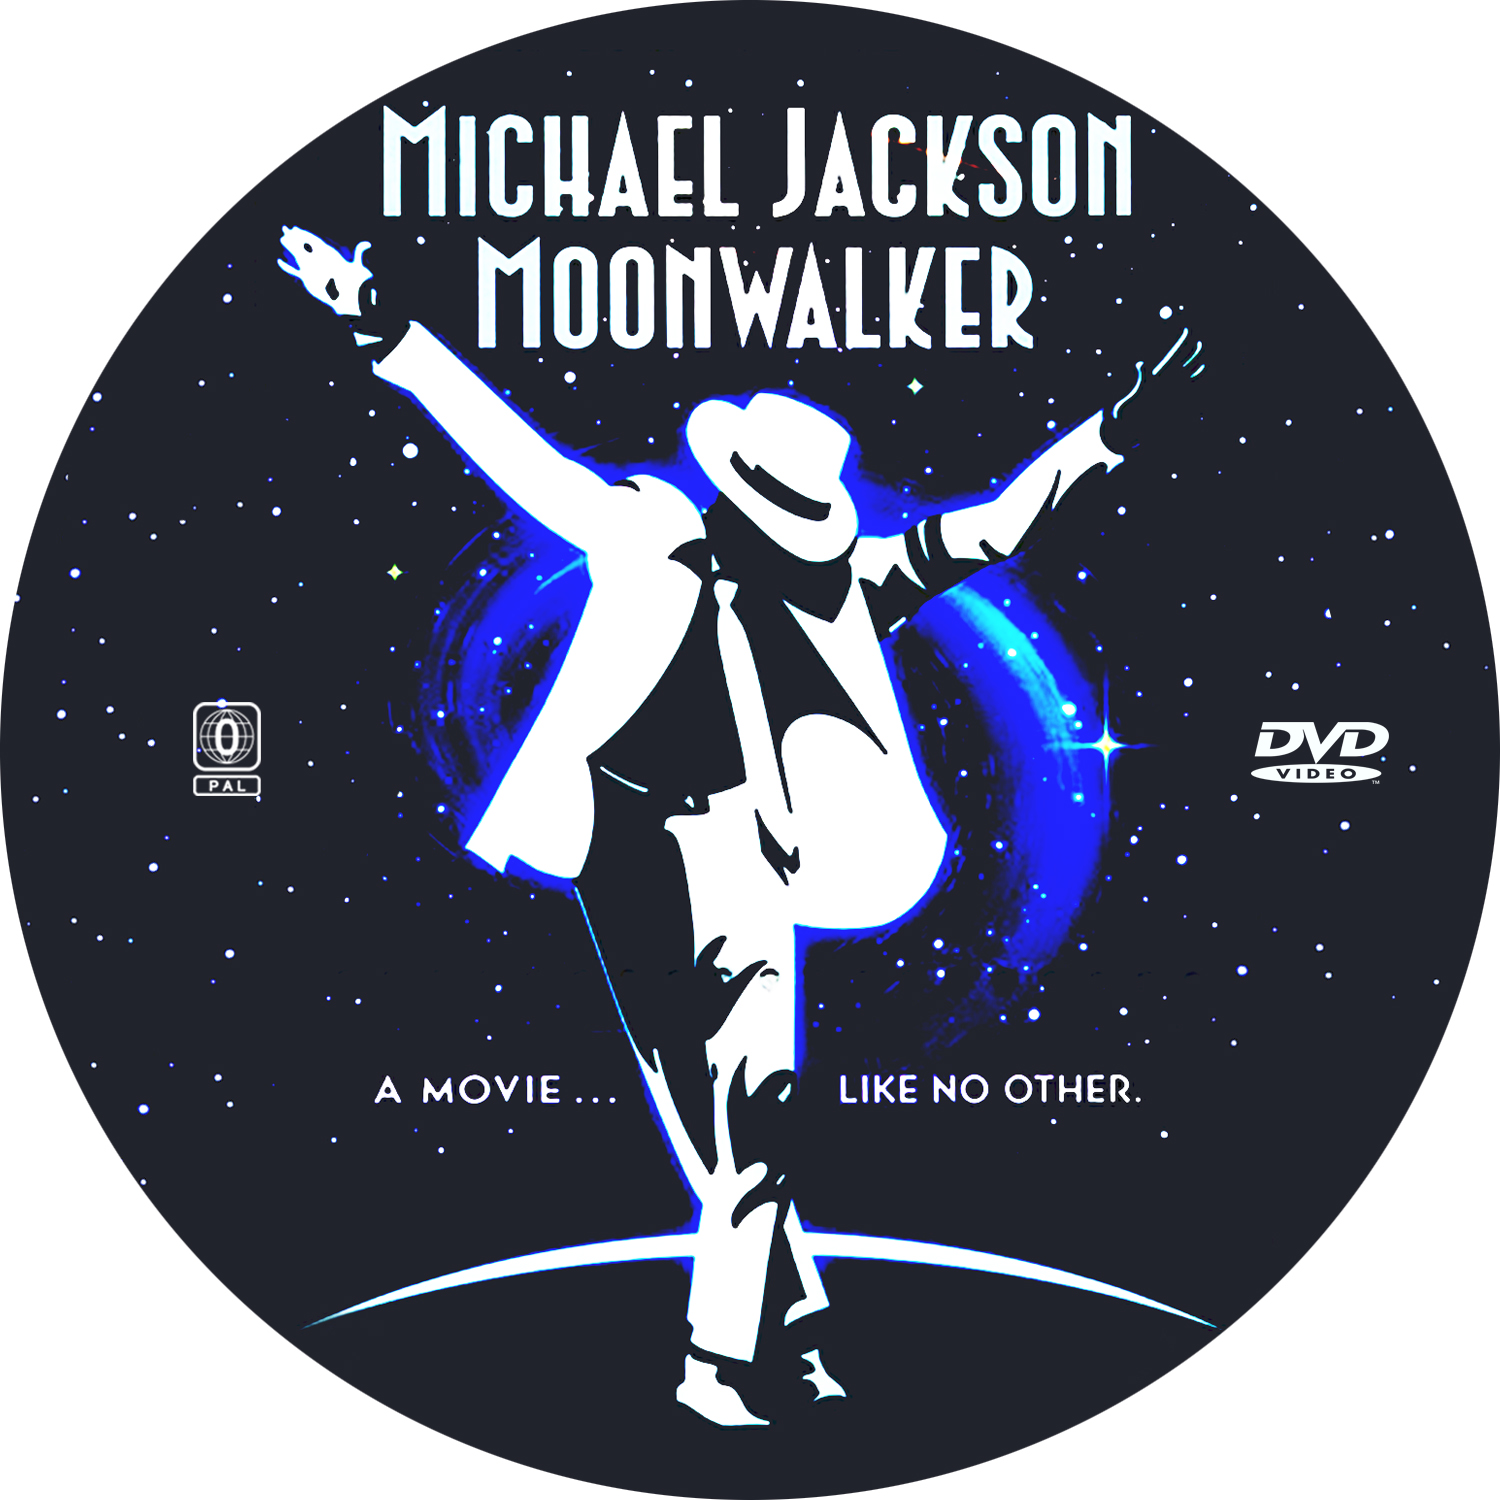 Michael jackson moonwalker. Moonwalker 1988.